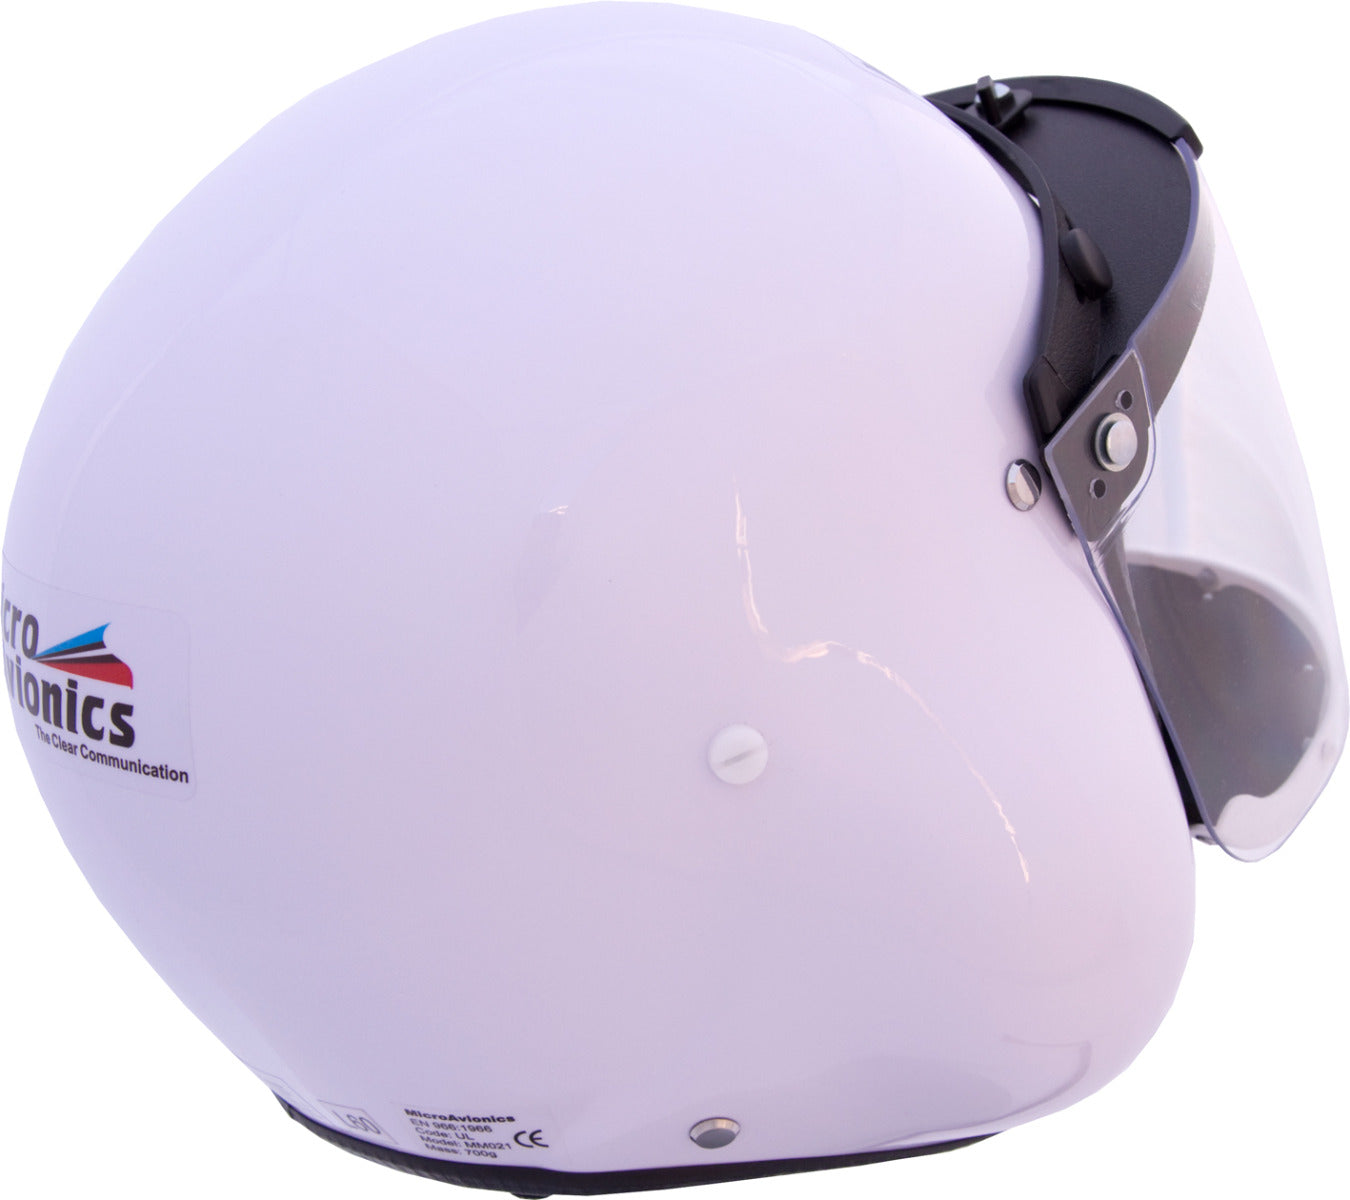 MT Gyrocopter - Integral Headset Helmet System